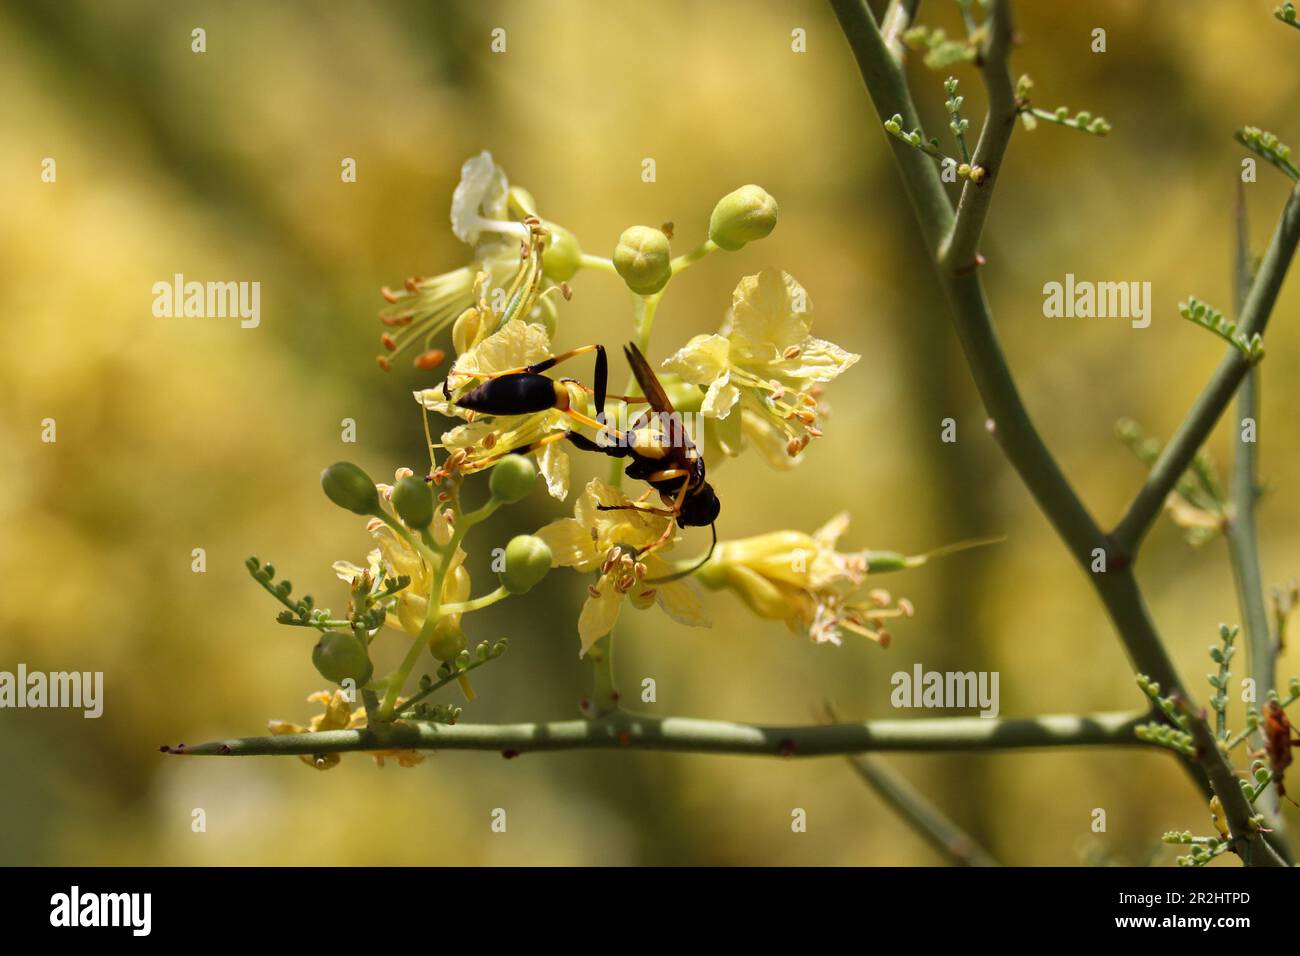 Schwarz-gelber Schlammbrauber oder Sceliphron Caementarium, das auf der Uferfarm Blumen von palo verde füttert. Stockfoto